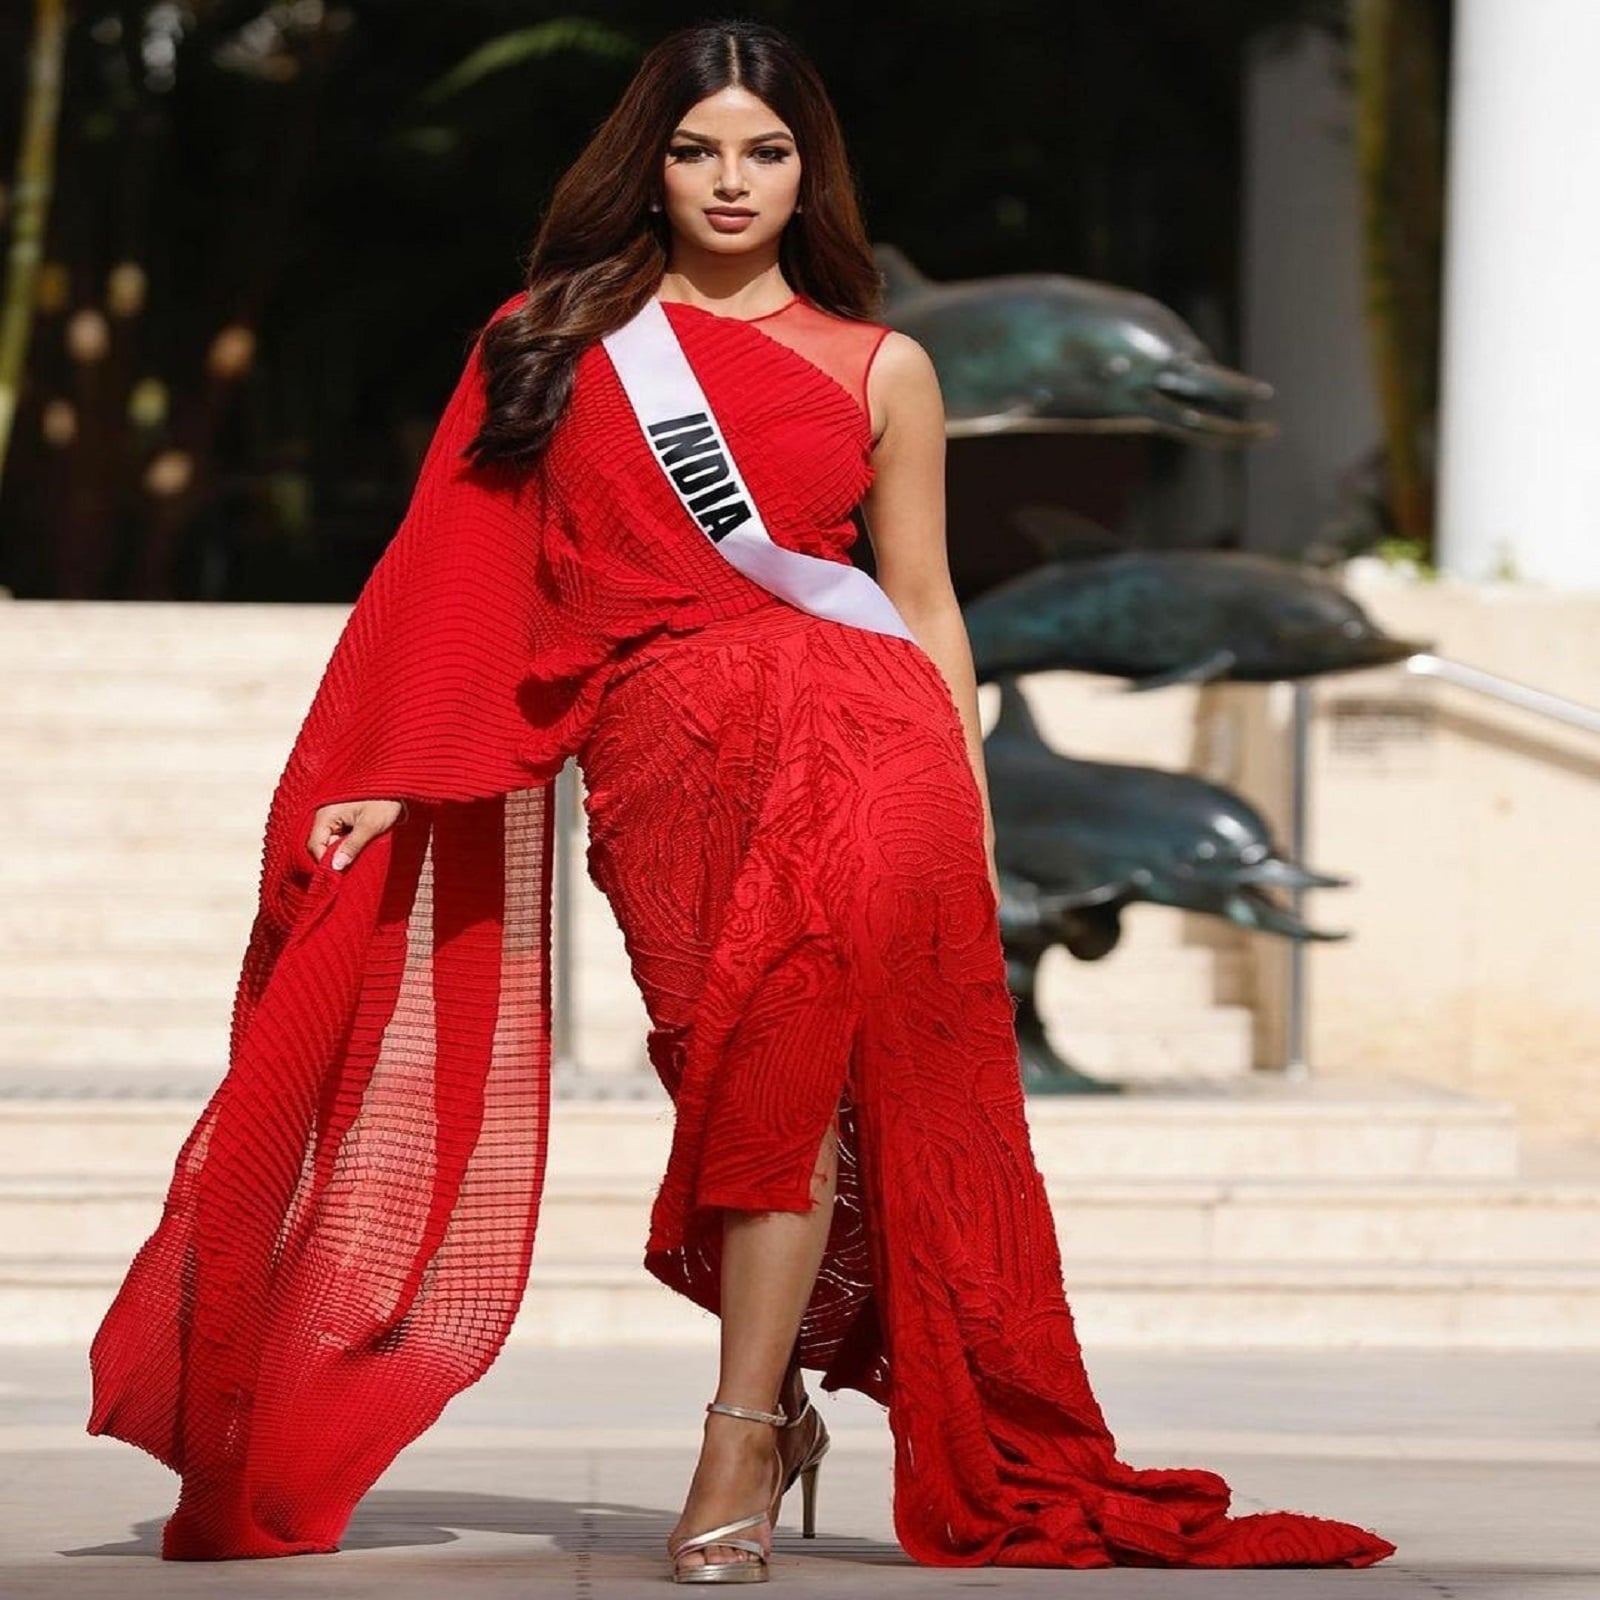 Liva miss diva universe 2021 winner harnam sandhu know some things about  her pra - Miss Diva Universe 2021: बॉडी शेमिंग की शिकार रहीं हरनाज संधू  बनीं विश्‍व सुंदरी, जानें उनके बारे